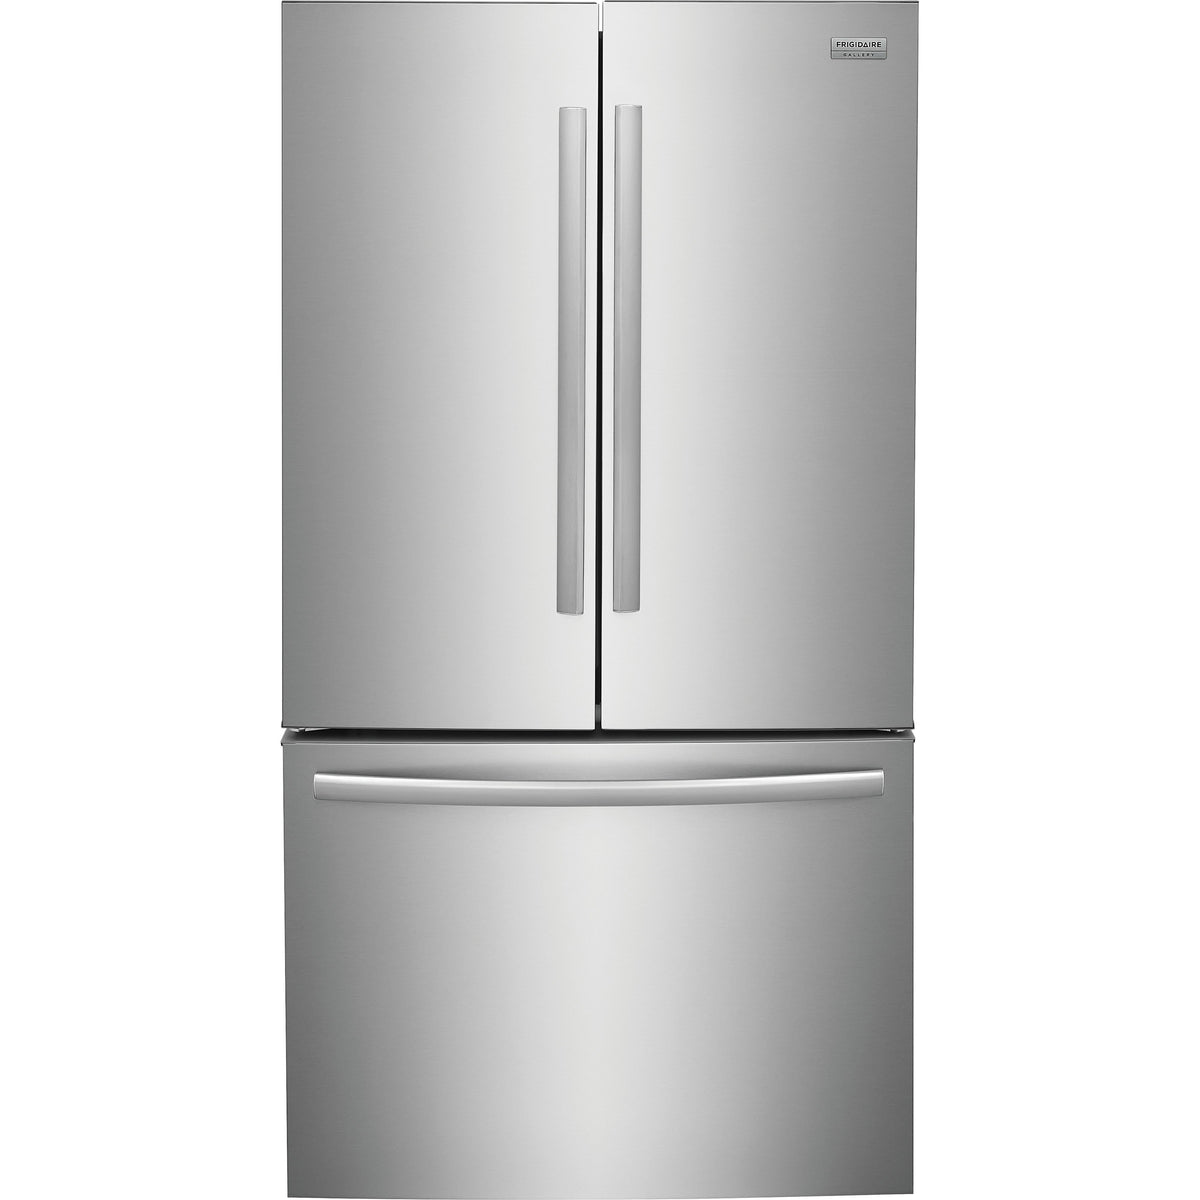 36-inch, 23.3 cu. ft. French 3-Door Refrigerator GRFG2353AF IMAGE 1